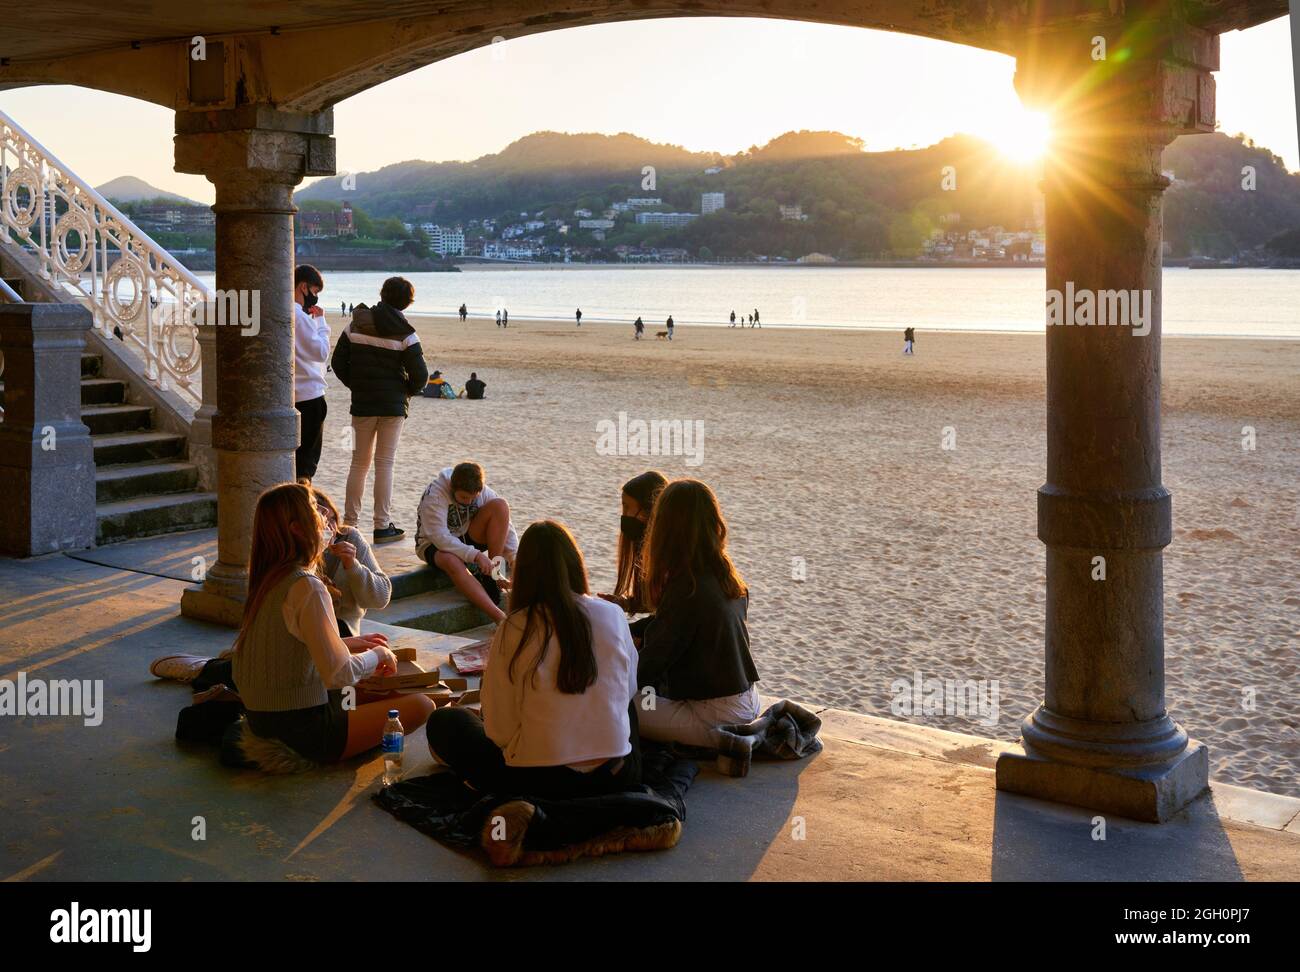 Grupo de jóvenes amigos sentados en círculo disfrutando de la puesta de sol en la playa de La Concha, la joya de Donostia por excelencia, emblema de la ciudad, incomparable Foto de stock